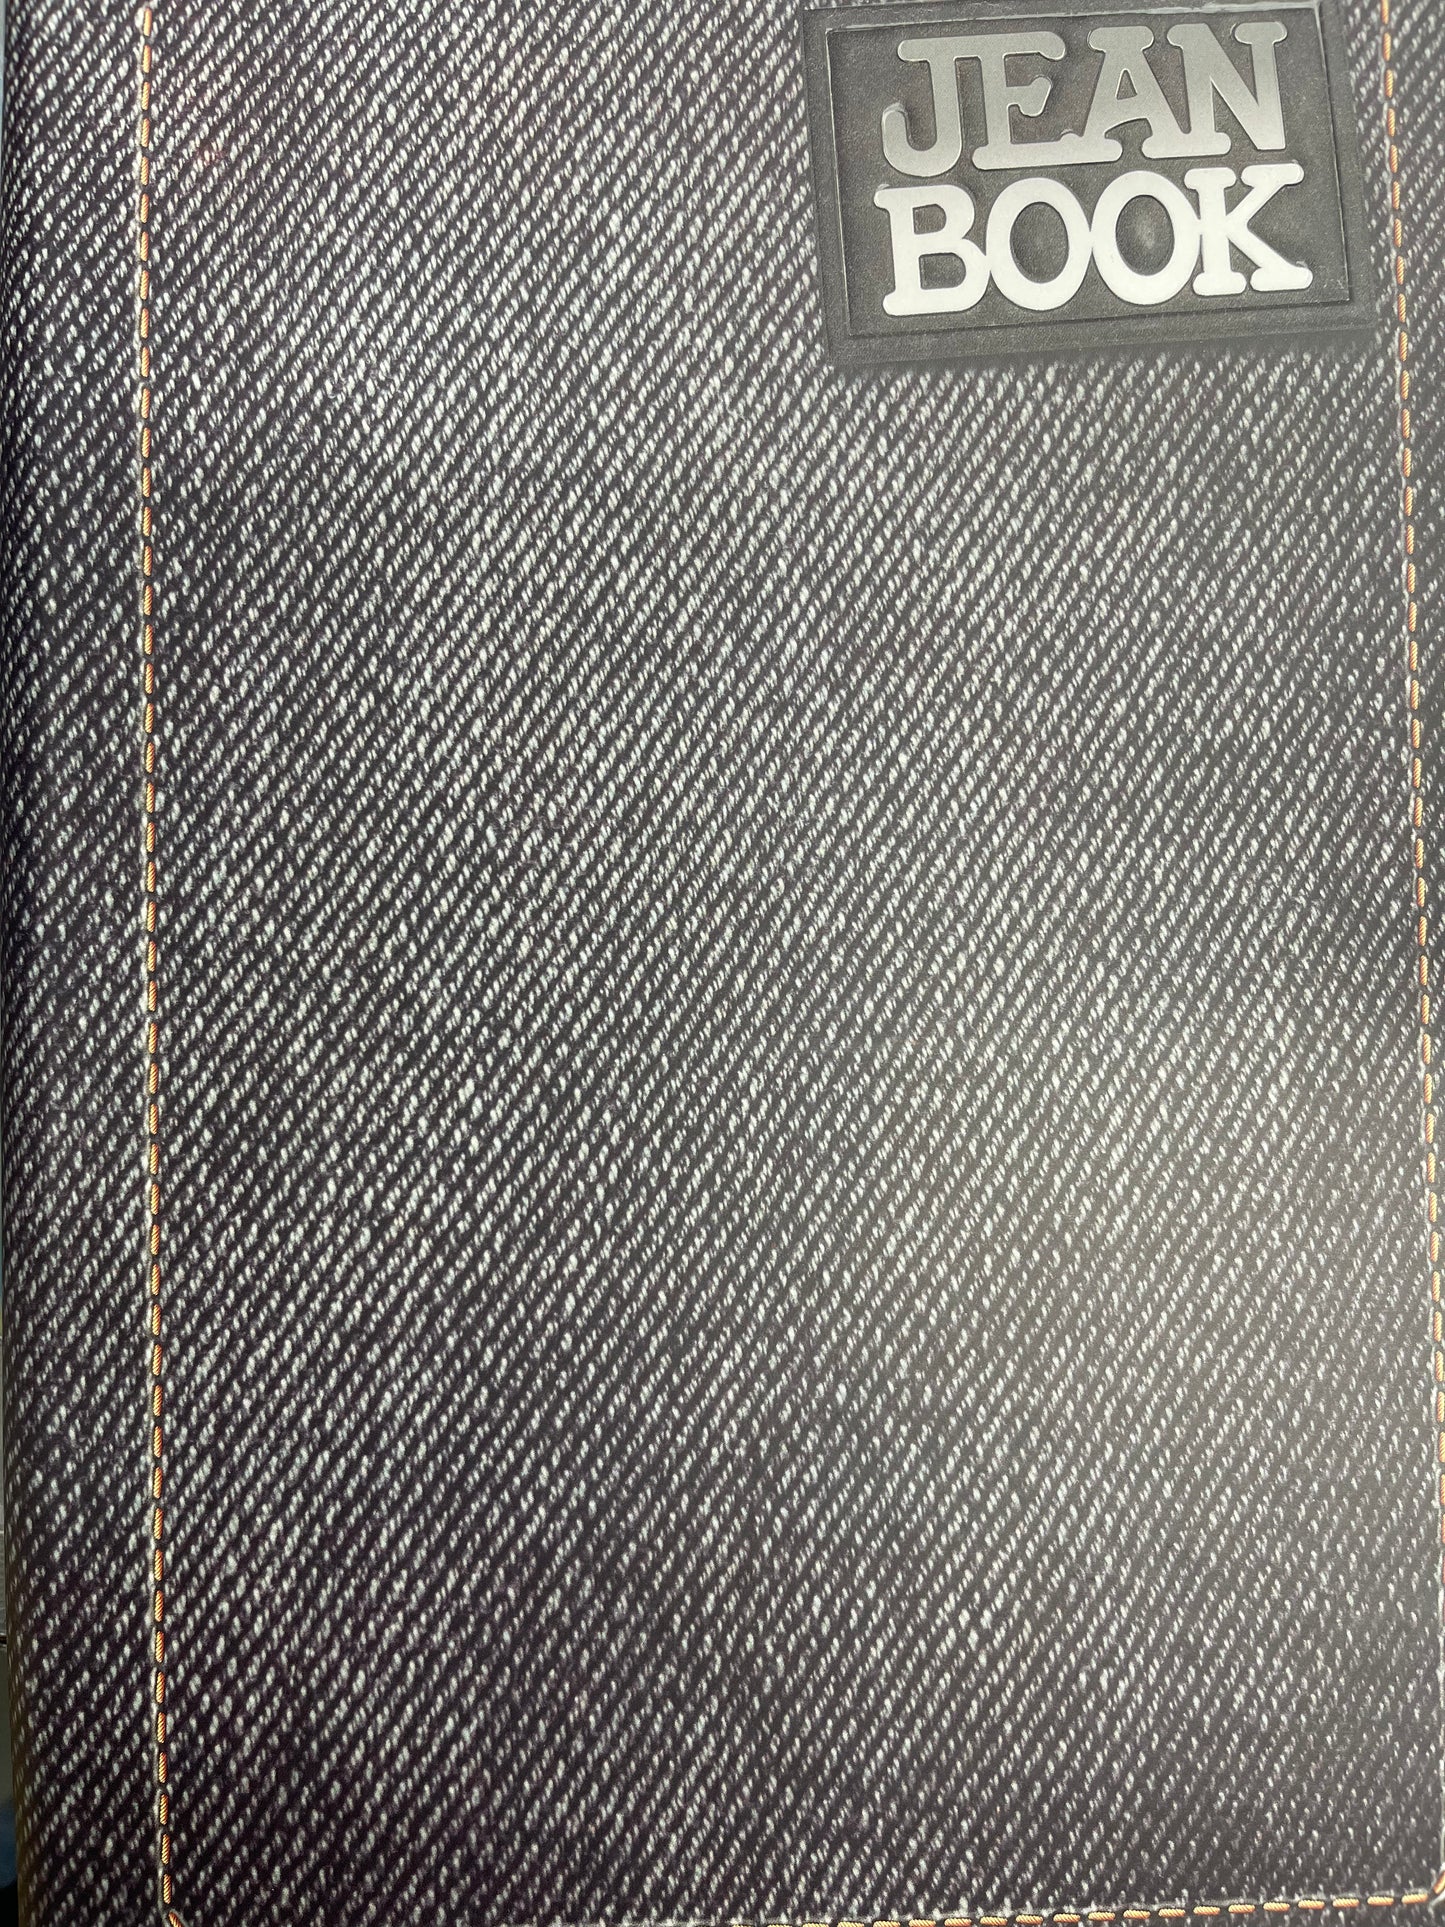 Dura Book Jean Book Lrg. [200pgs]